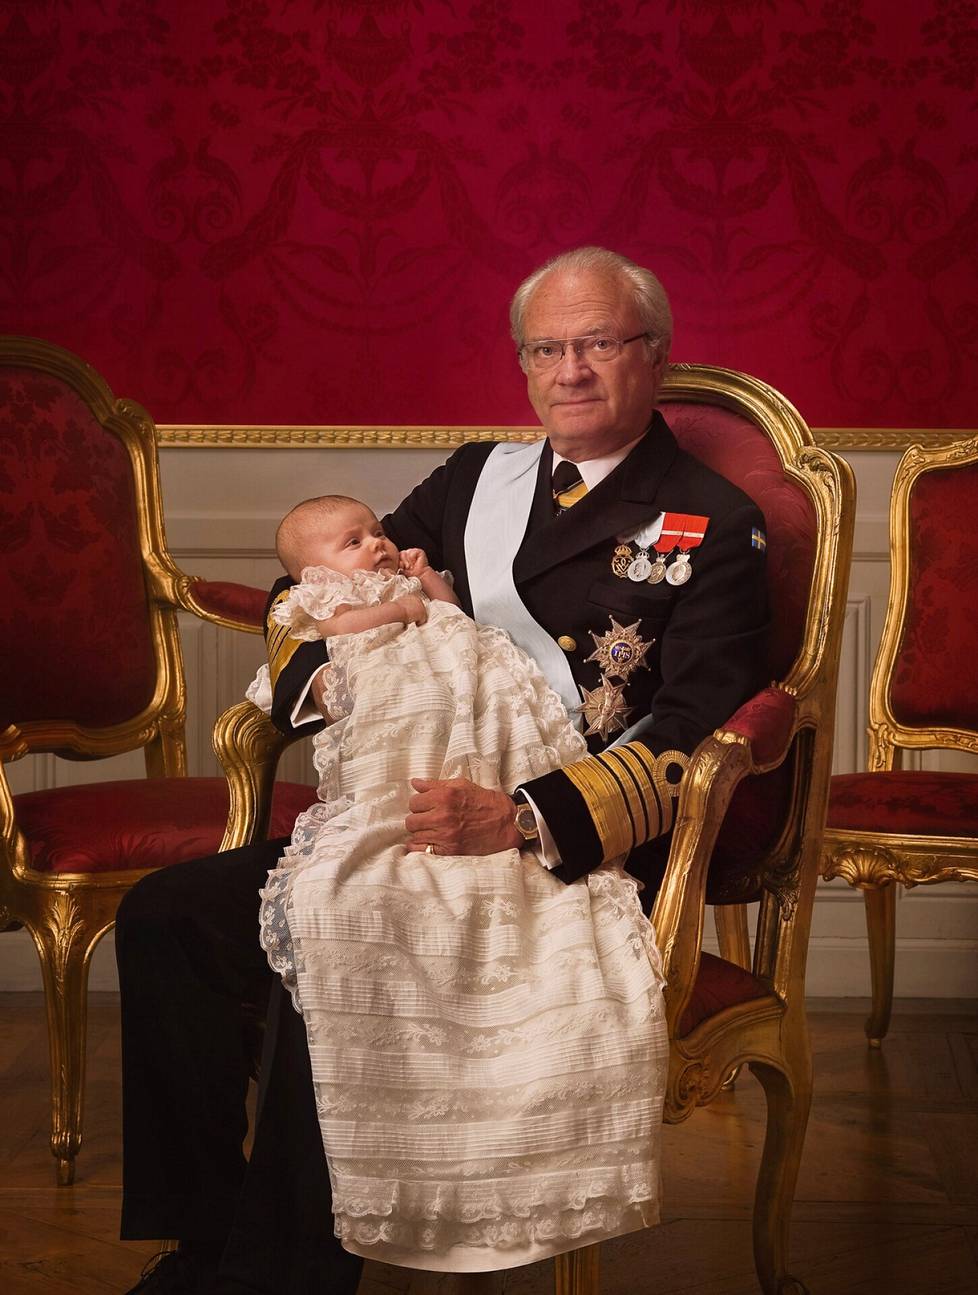 Kuningas Kaarle XVI Kustaa ja tuleva kuningatar Estelle ristiäispäivänä.